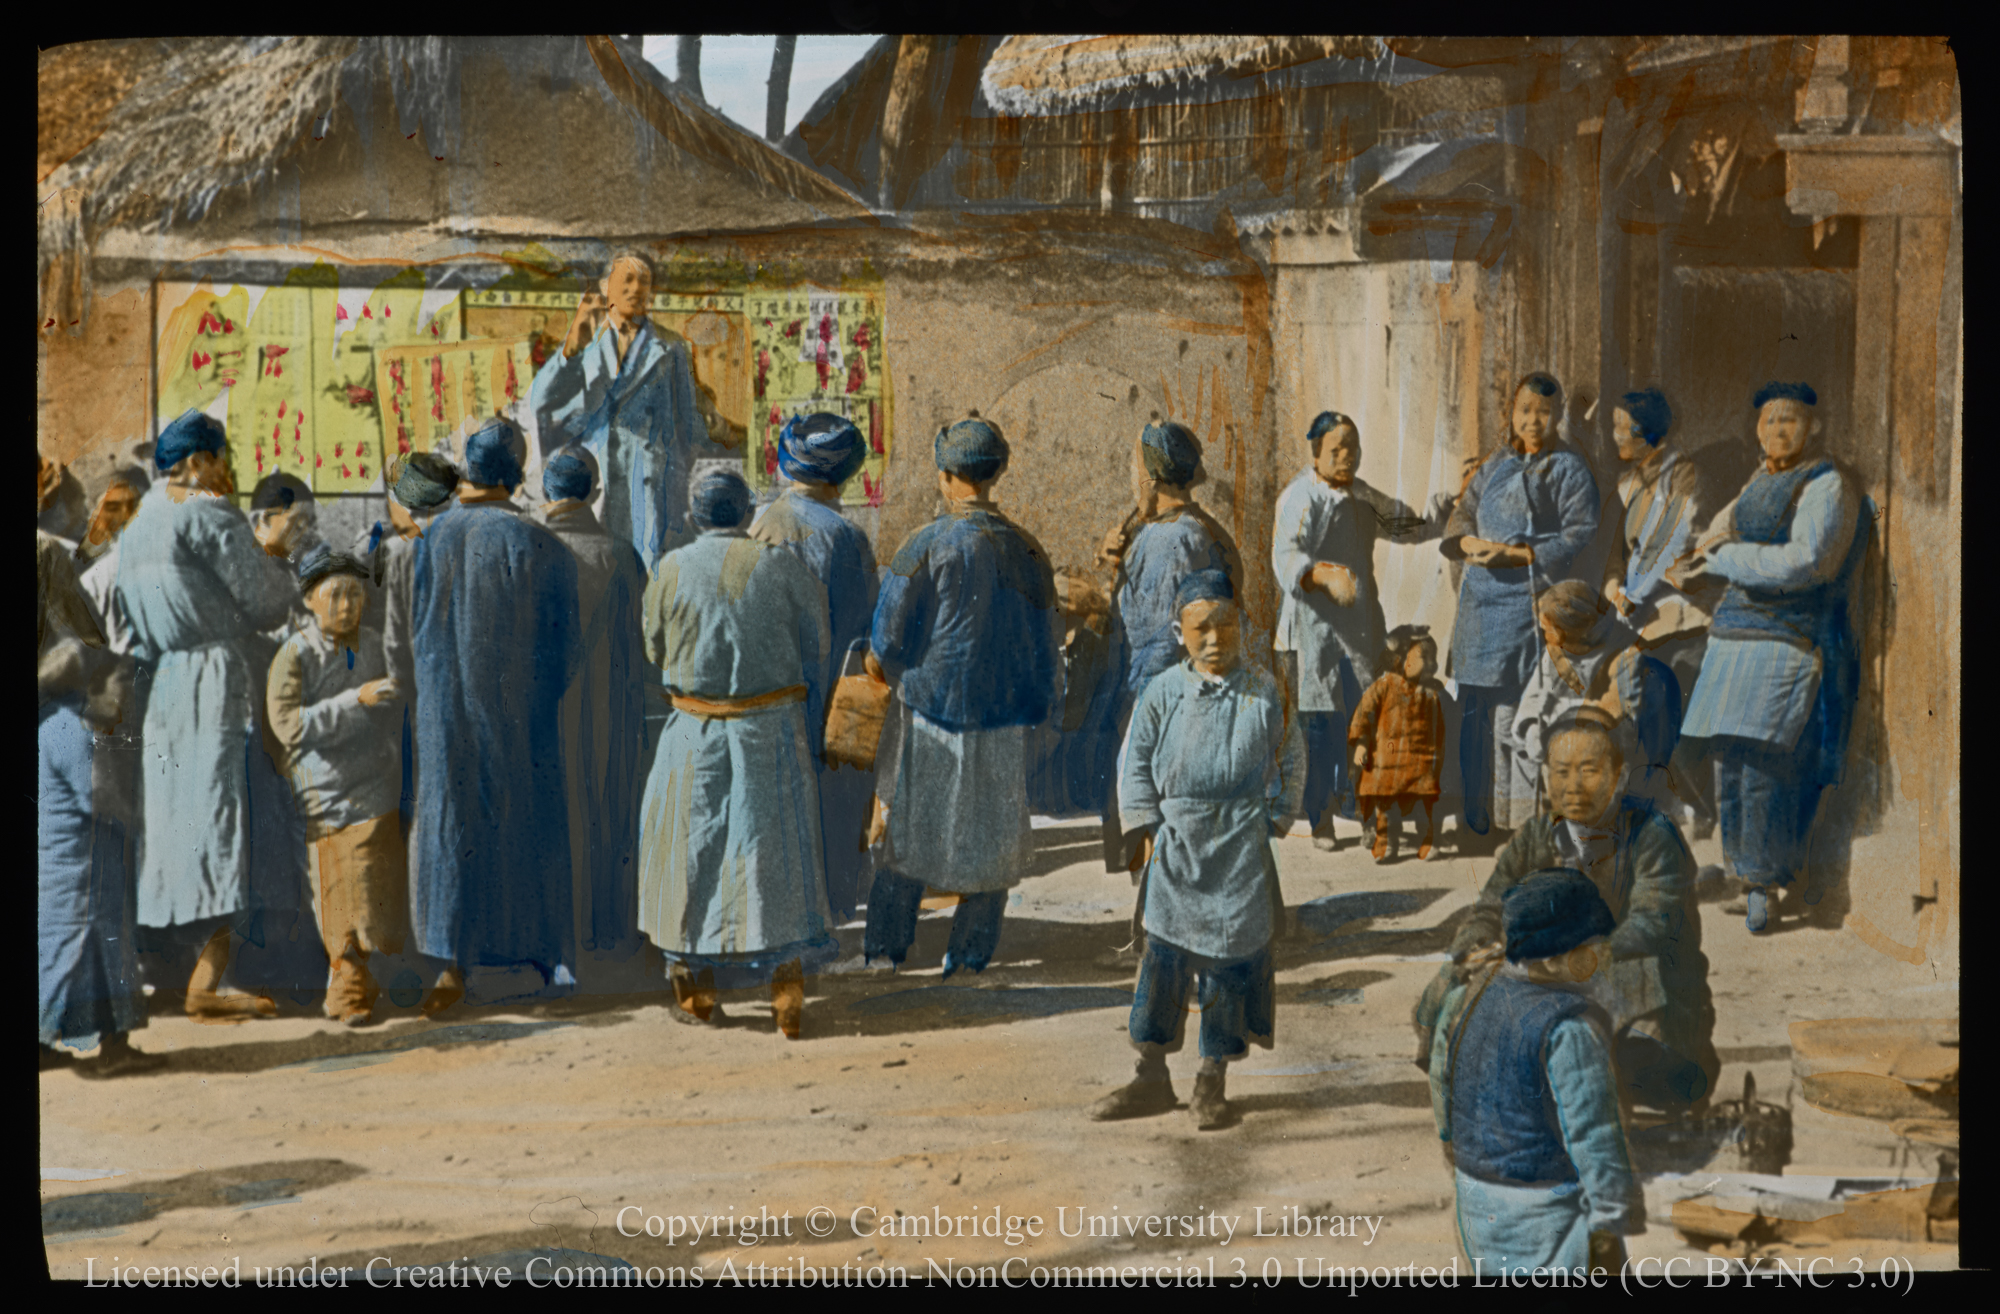 Pastor Ming preaching, 1900 - 1920